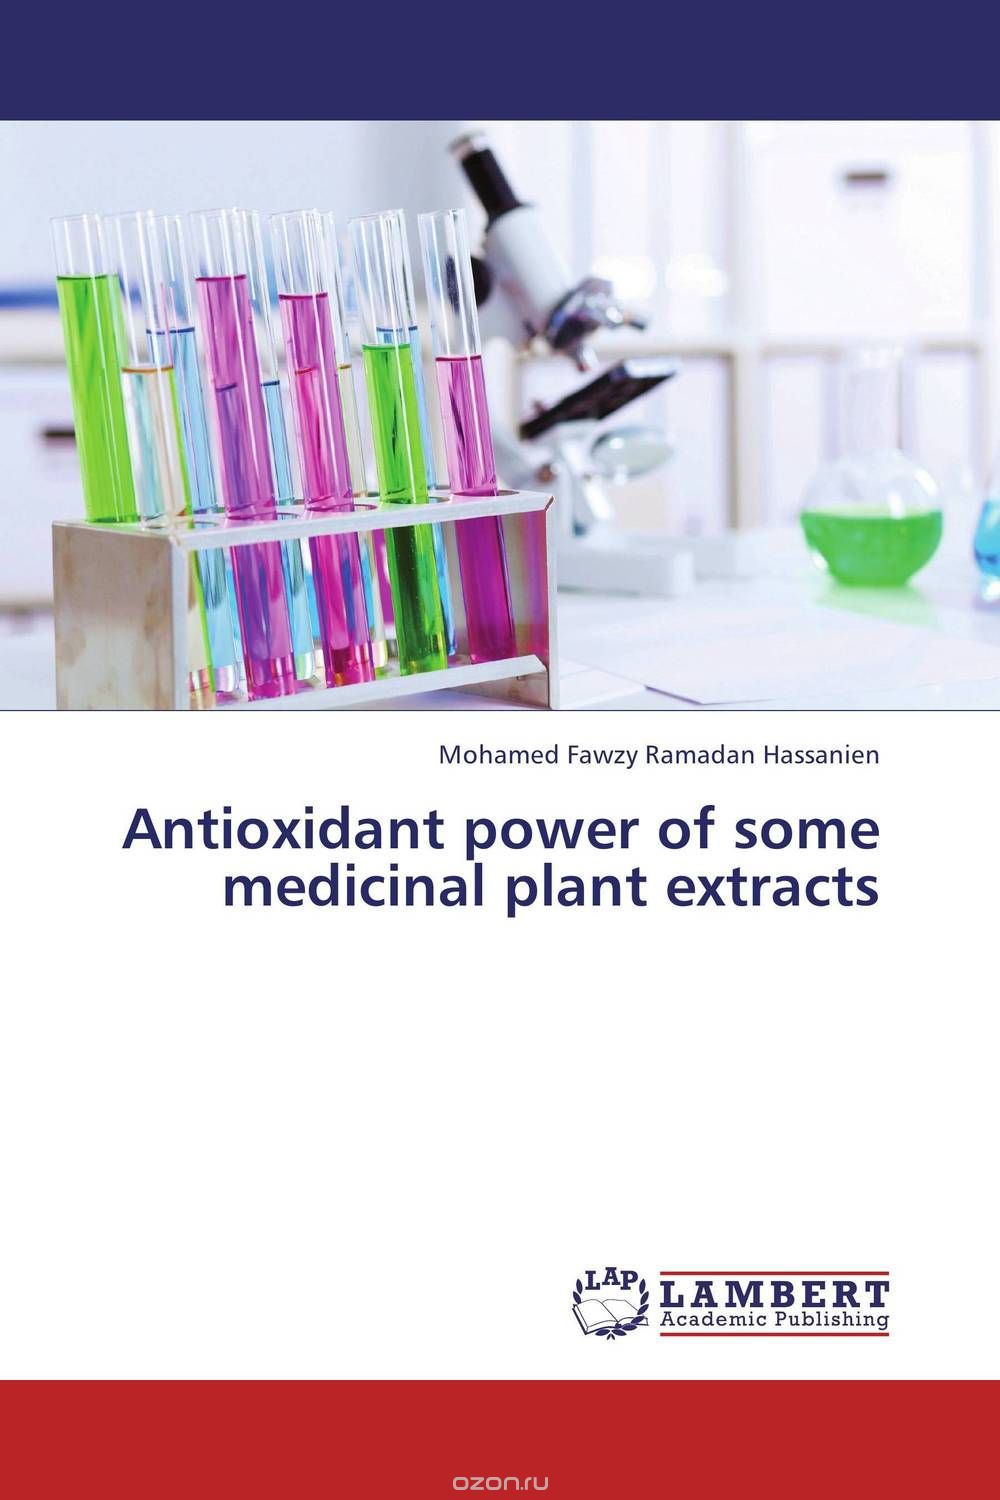 Скачать книгу "Antioxidant power of some medicinal plant extracts"